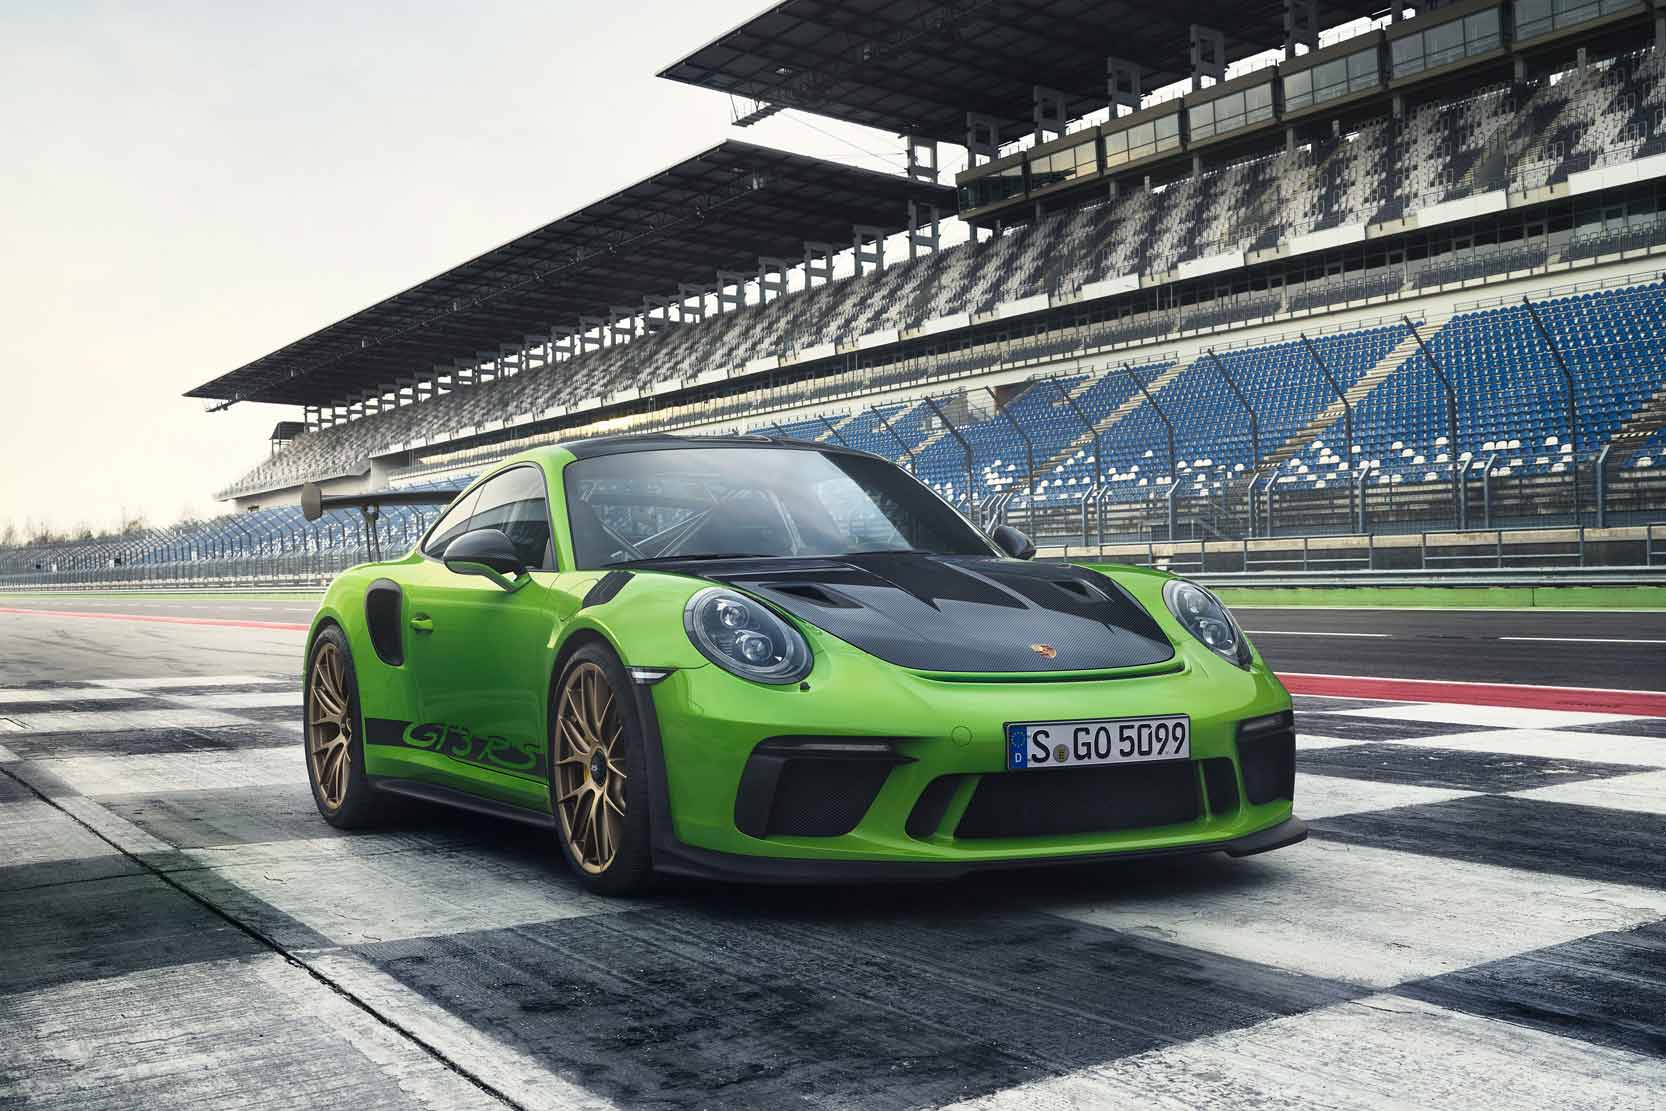 Image principale de l'actu: Porsche 911 gt3 rs la plus puissante 911 de serie a moteur atmospherique 